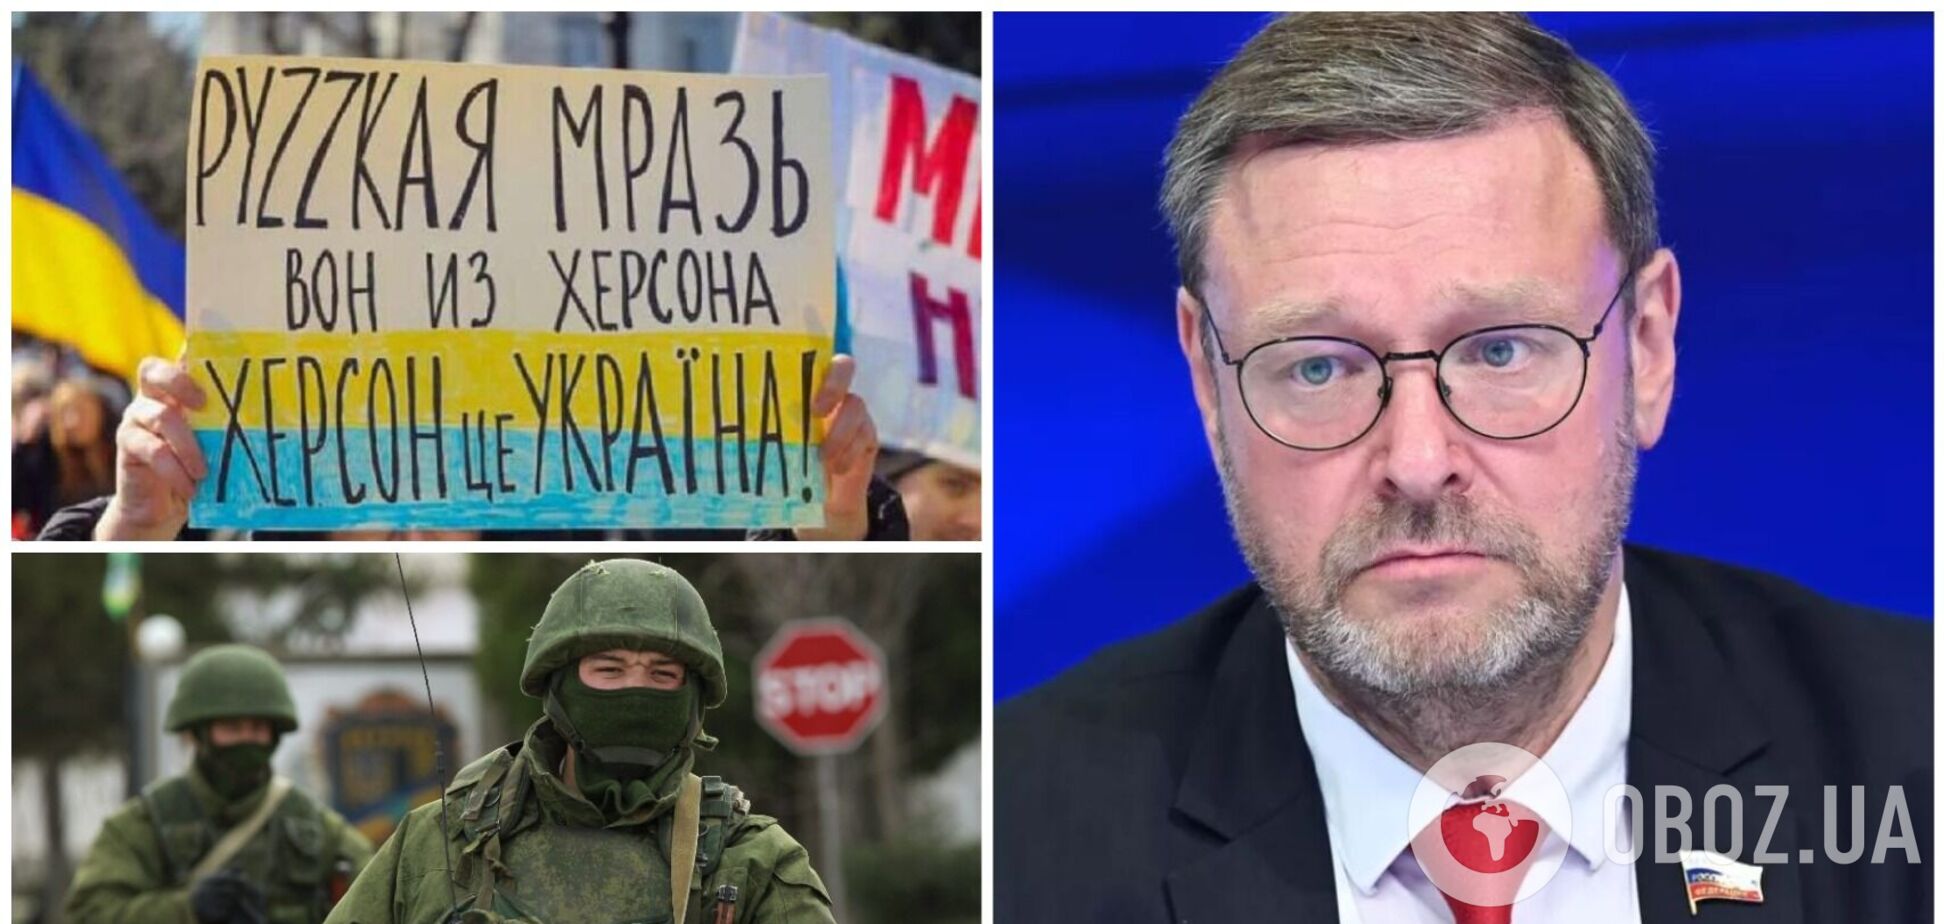 'Стане нападом на Росію': у Раді Федерації заявили, що Кремль збирається 'захищати' окуповані території України після 'референдуму'